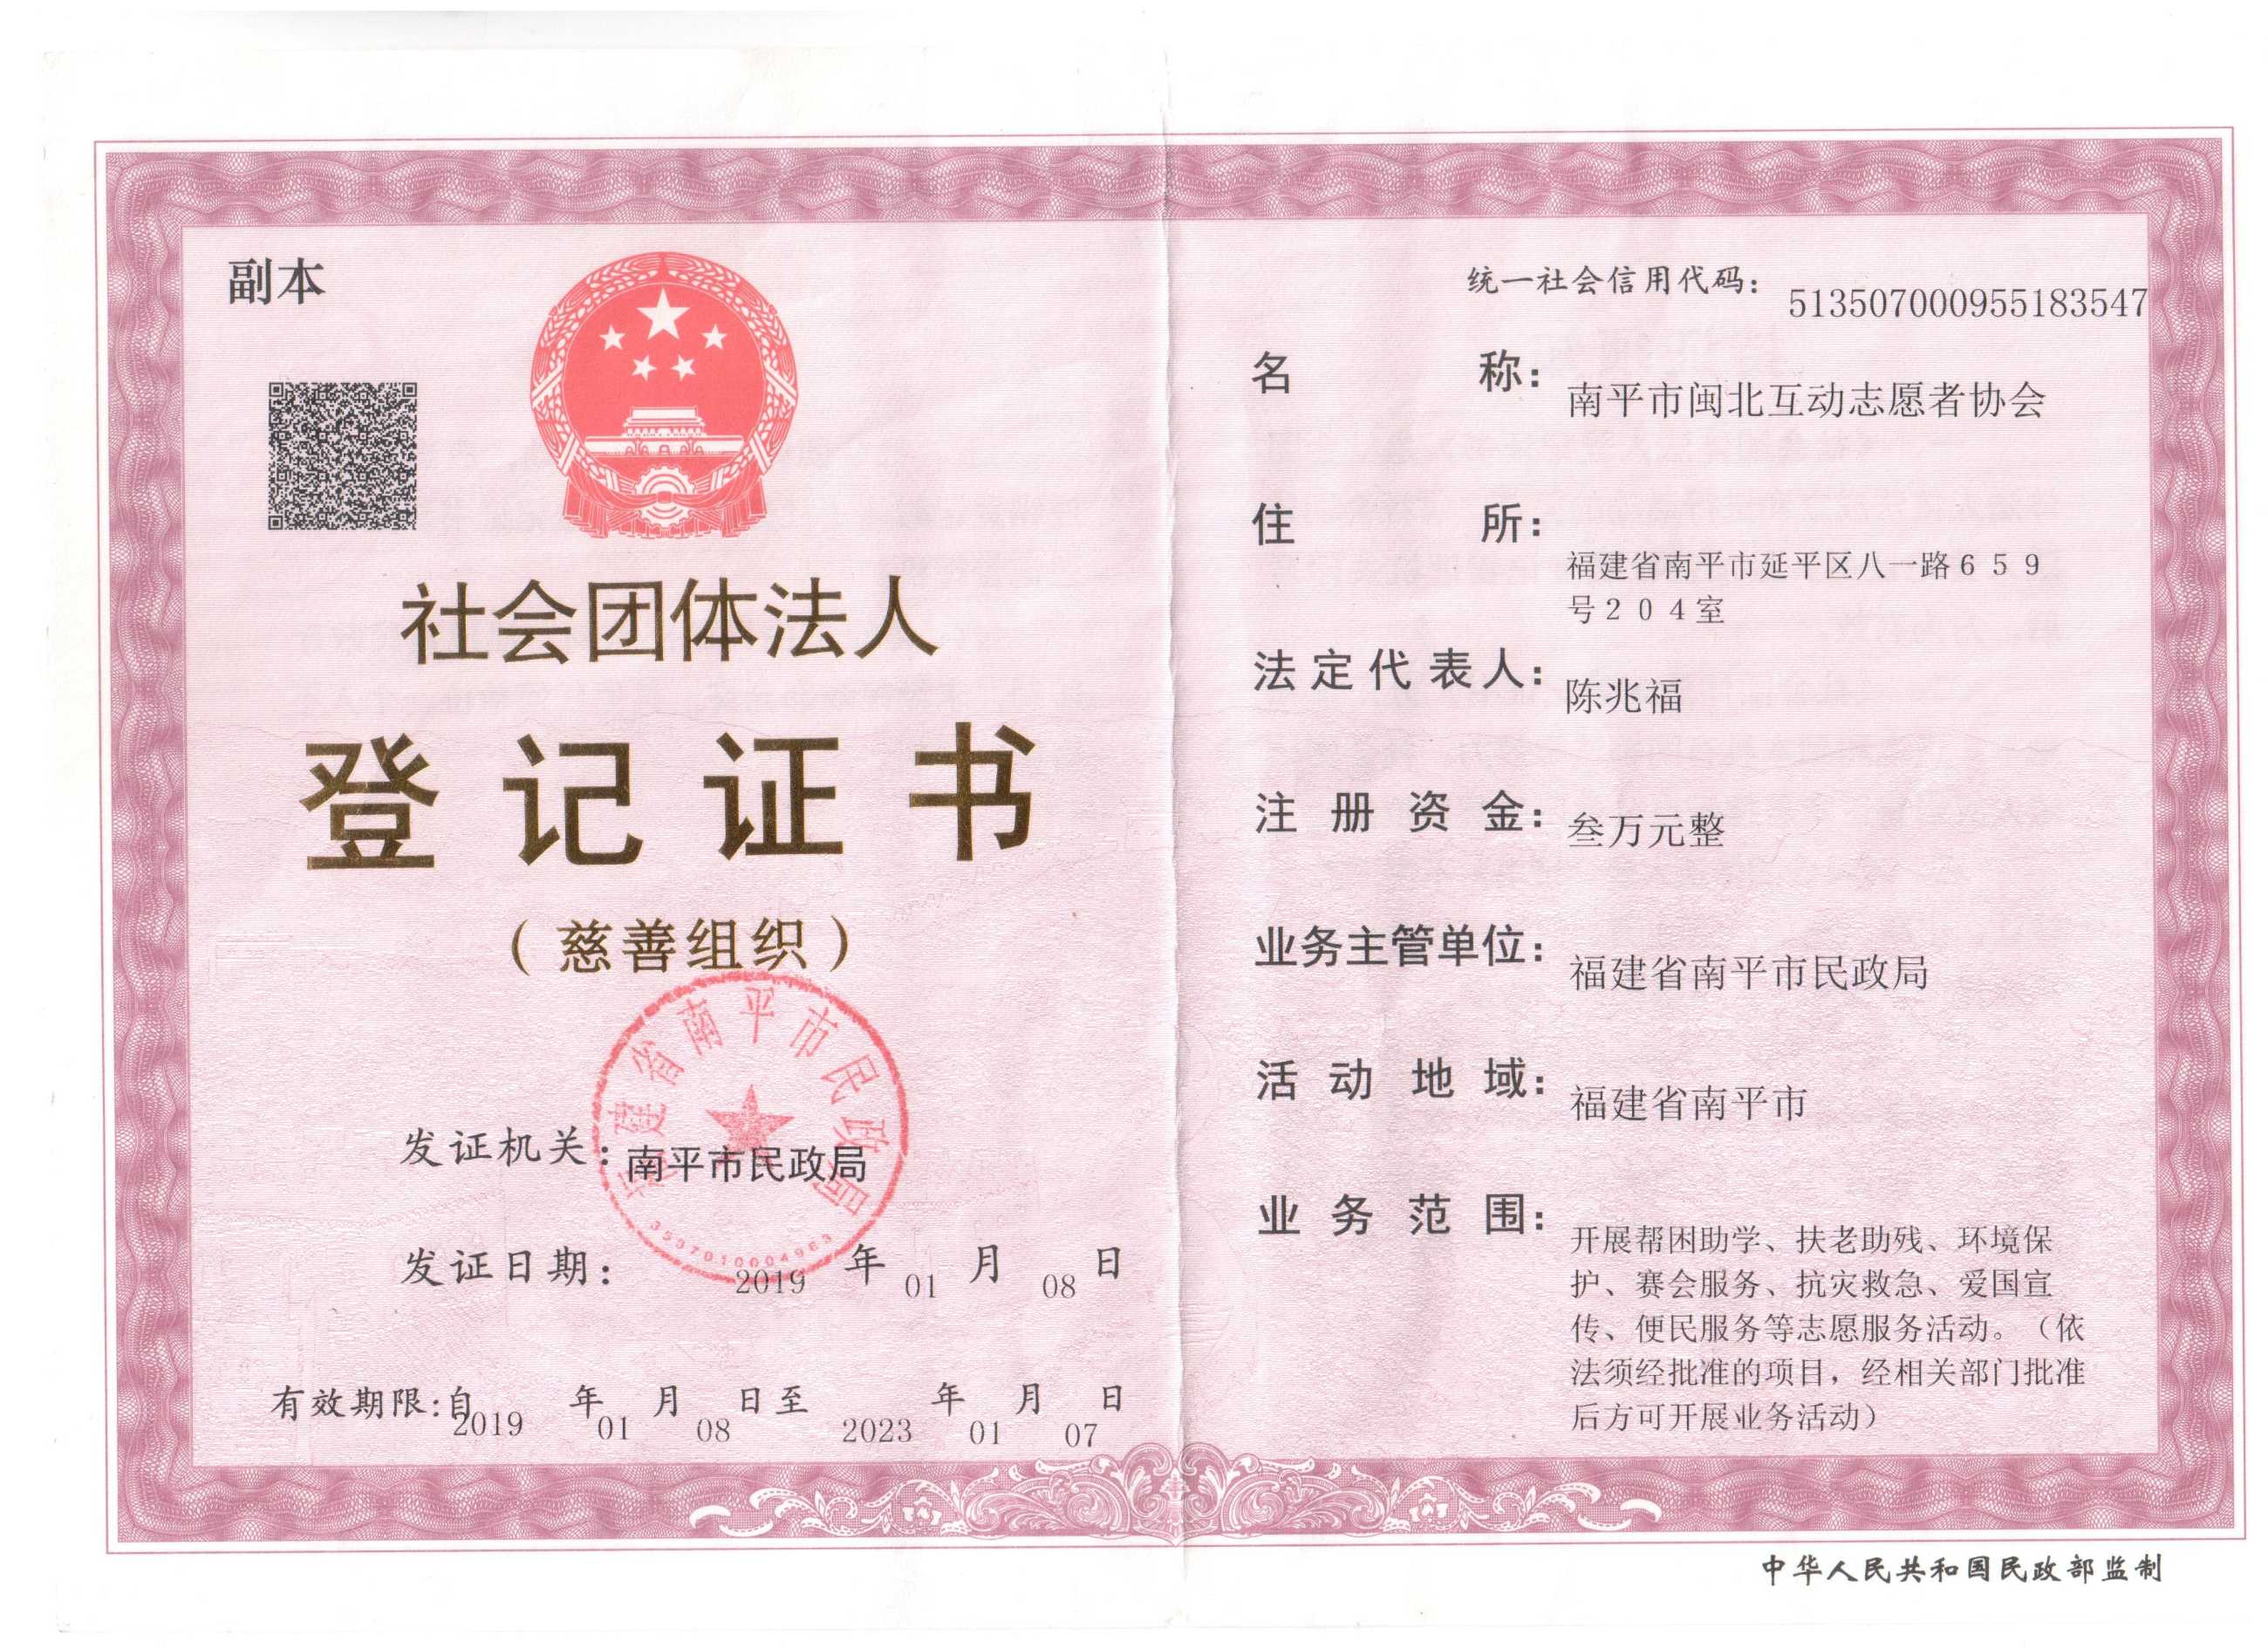 社会组织法人登记证书.JPG